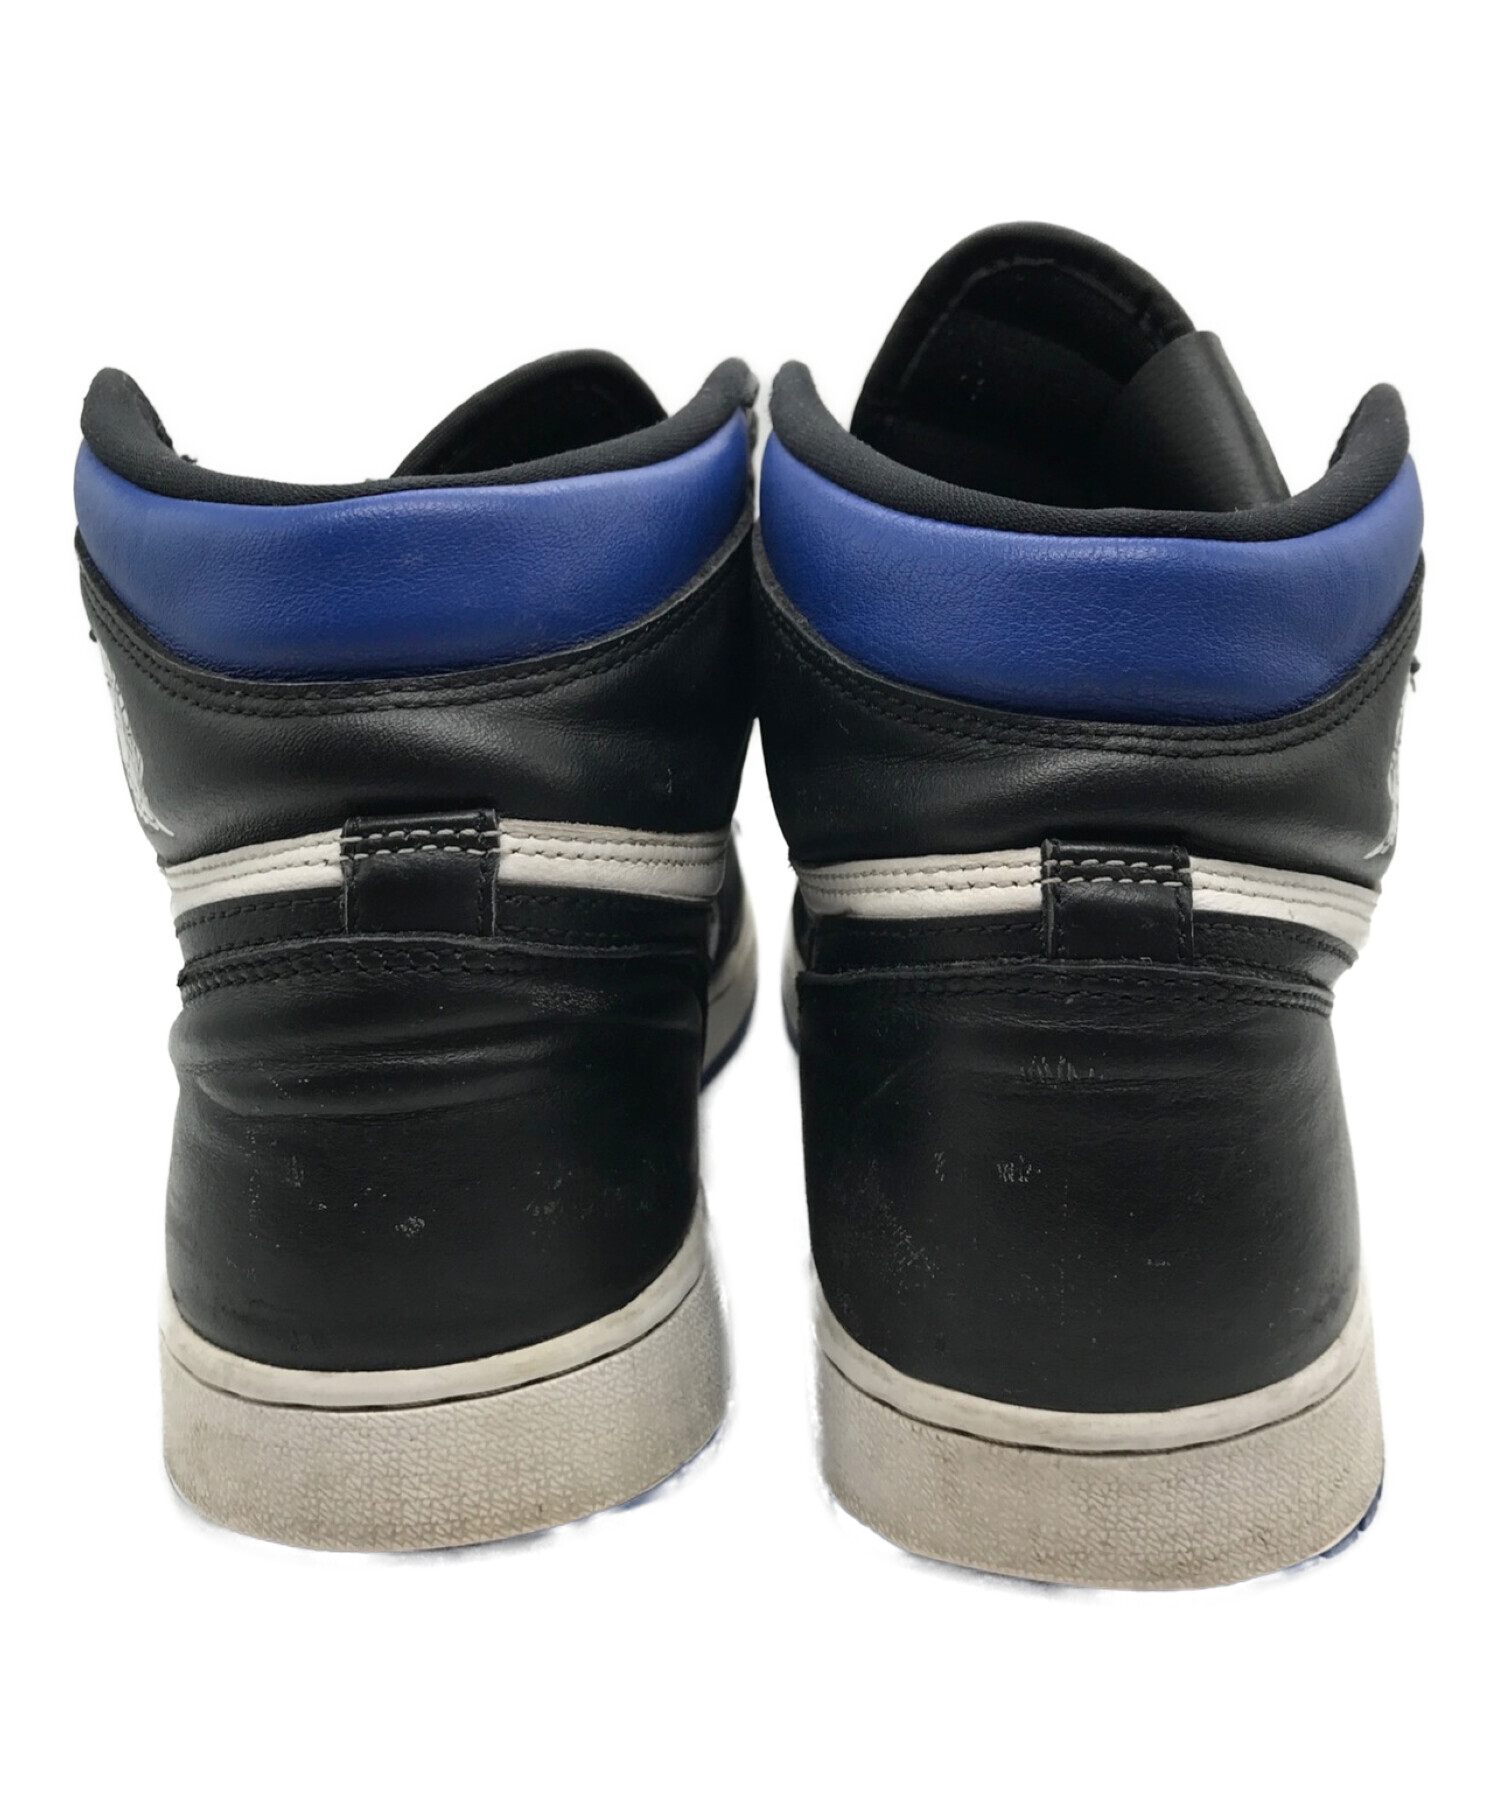 NIKE (ナイキ) Nike Air Jordan 1 Retro High OG Royal Toe/ハイカットスニーカー ブルー×ブラック  サイズ:30